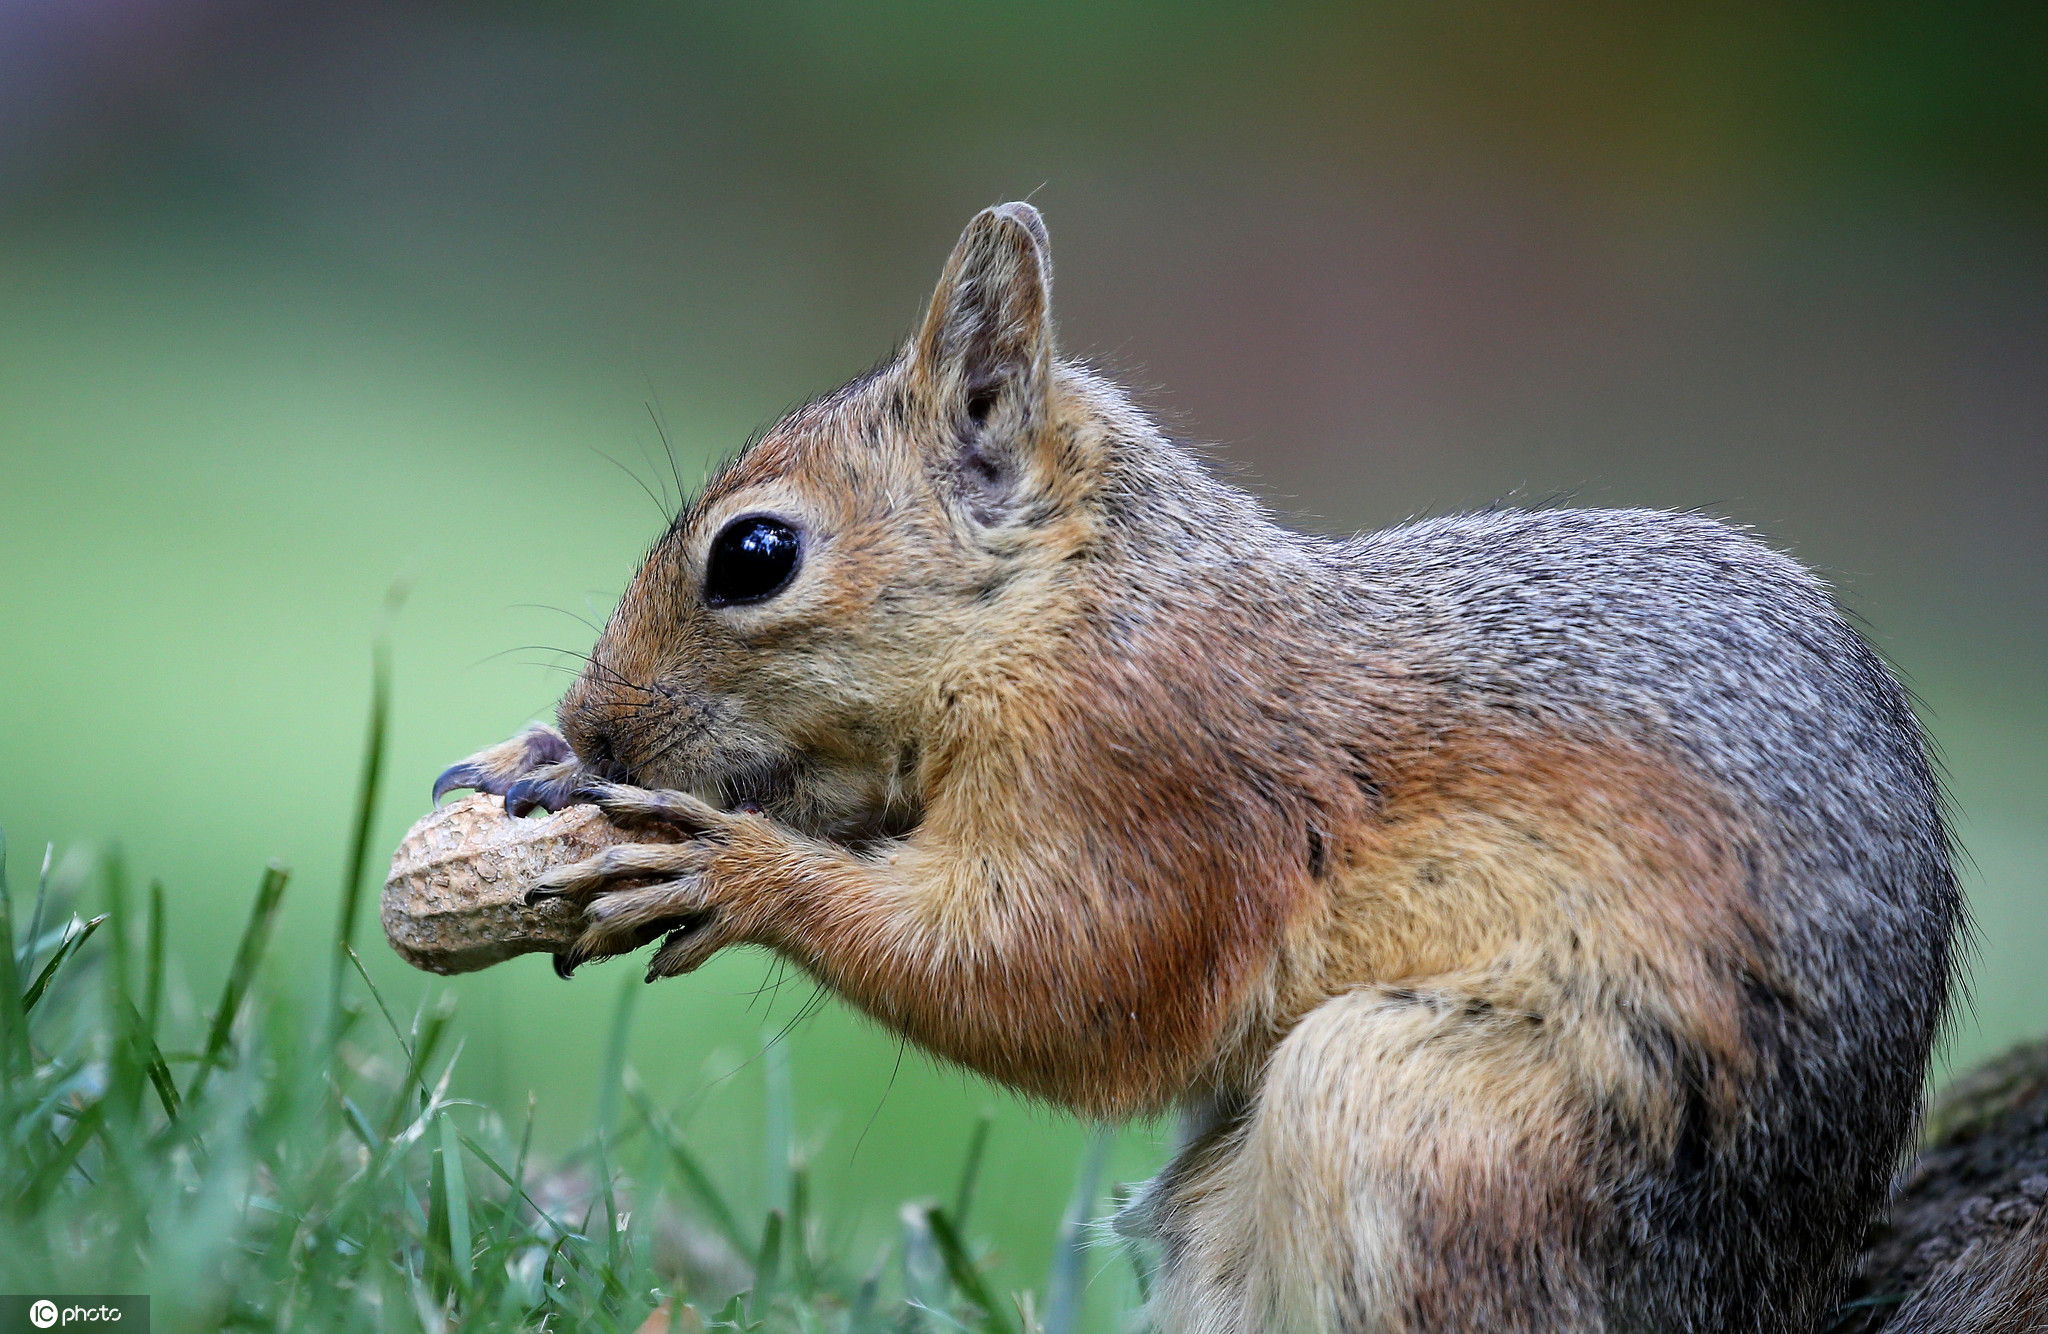 松鼠主要吃自己发现和游客提供的美食,并在土壤和和巢穴中储存坚果为